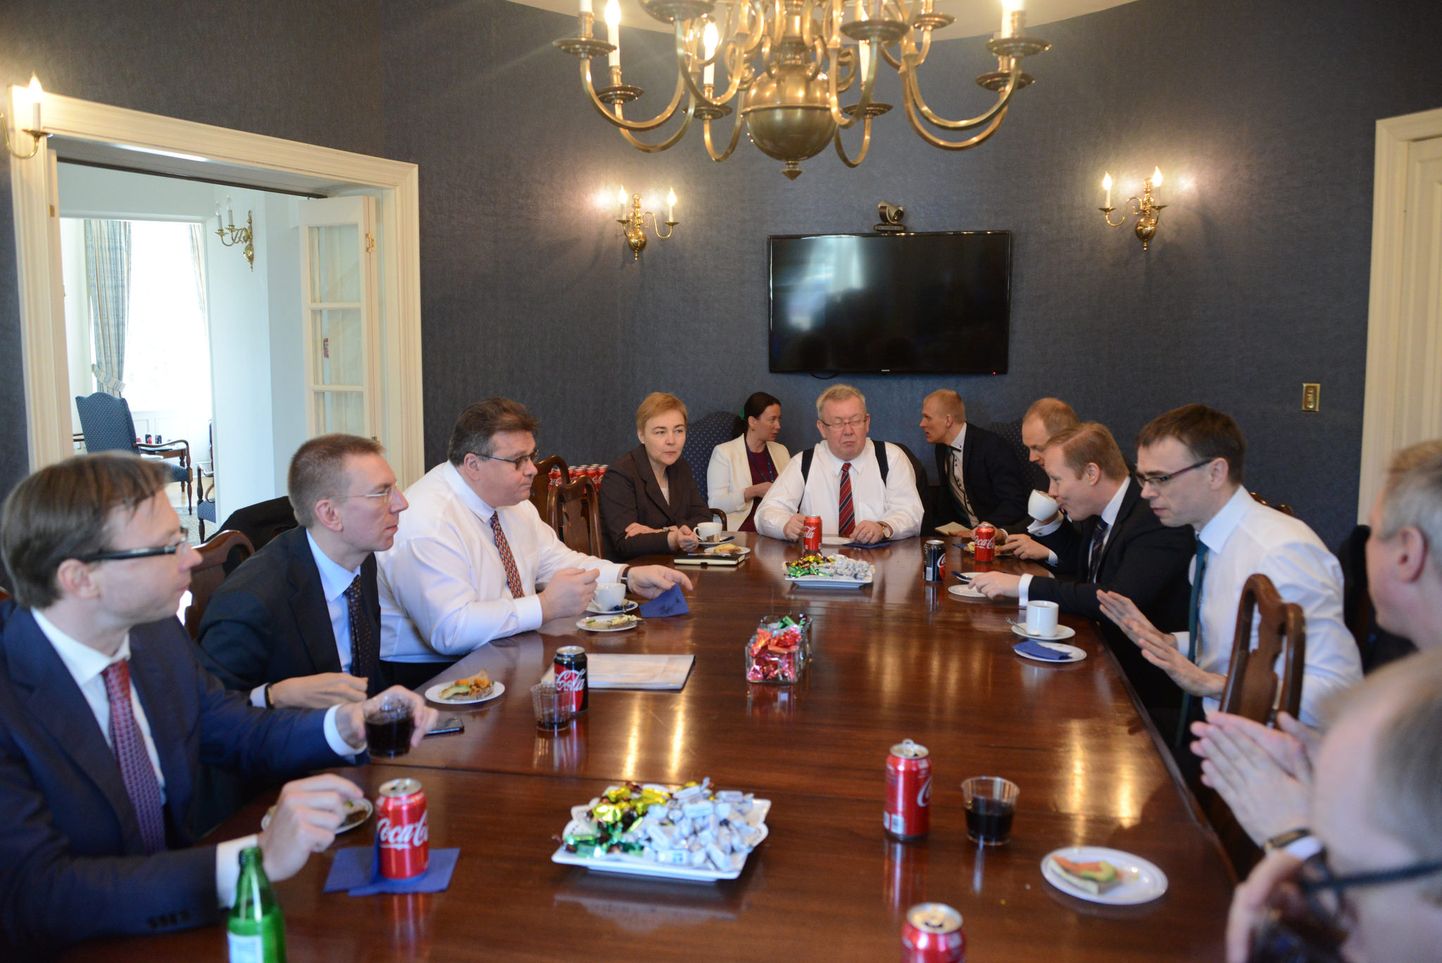 Balti riikide välisministrite koordinatsiooni kohtumine enne kohtumist Rex Tillersoniga.